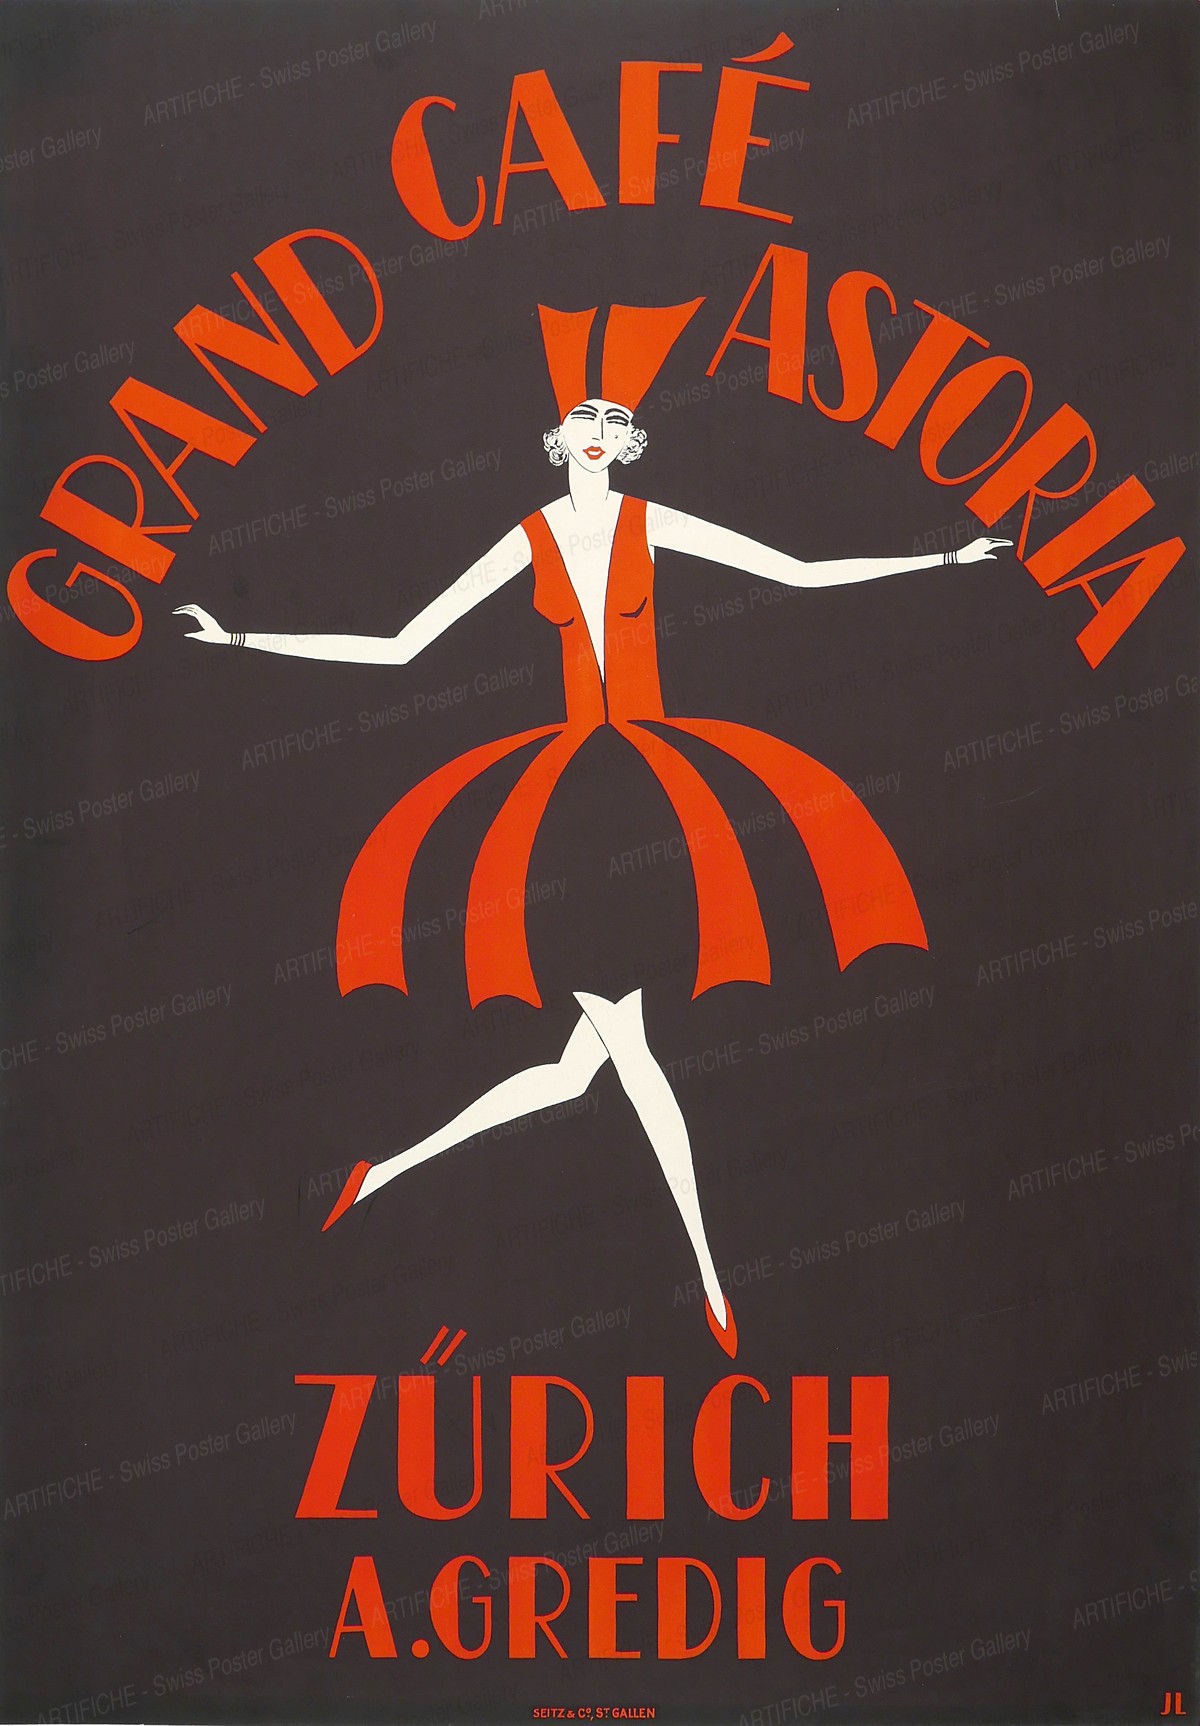 Grand Café Astoria – Zurich – A. Gredig